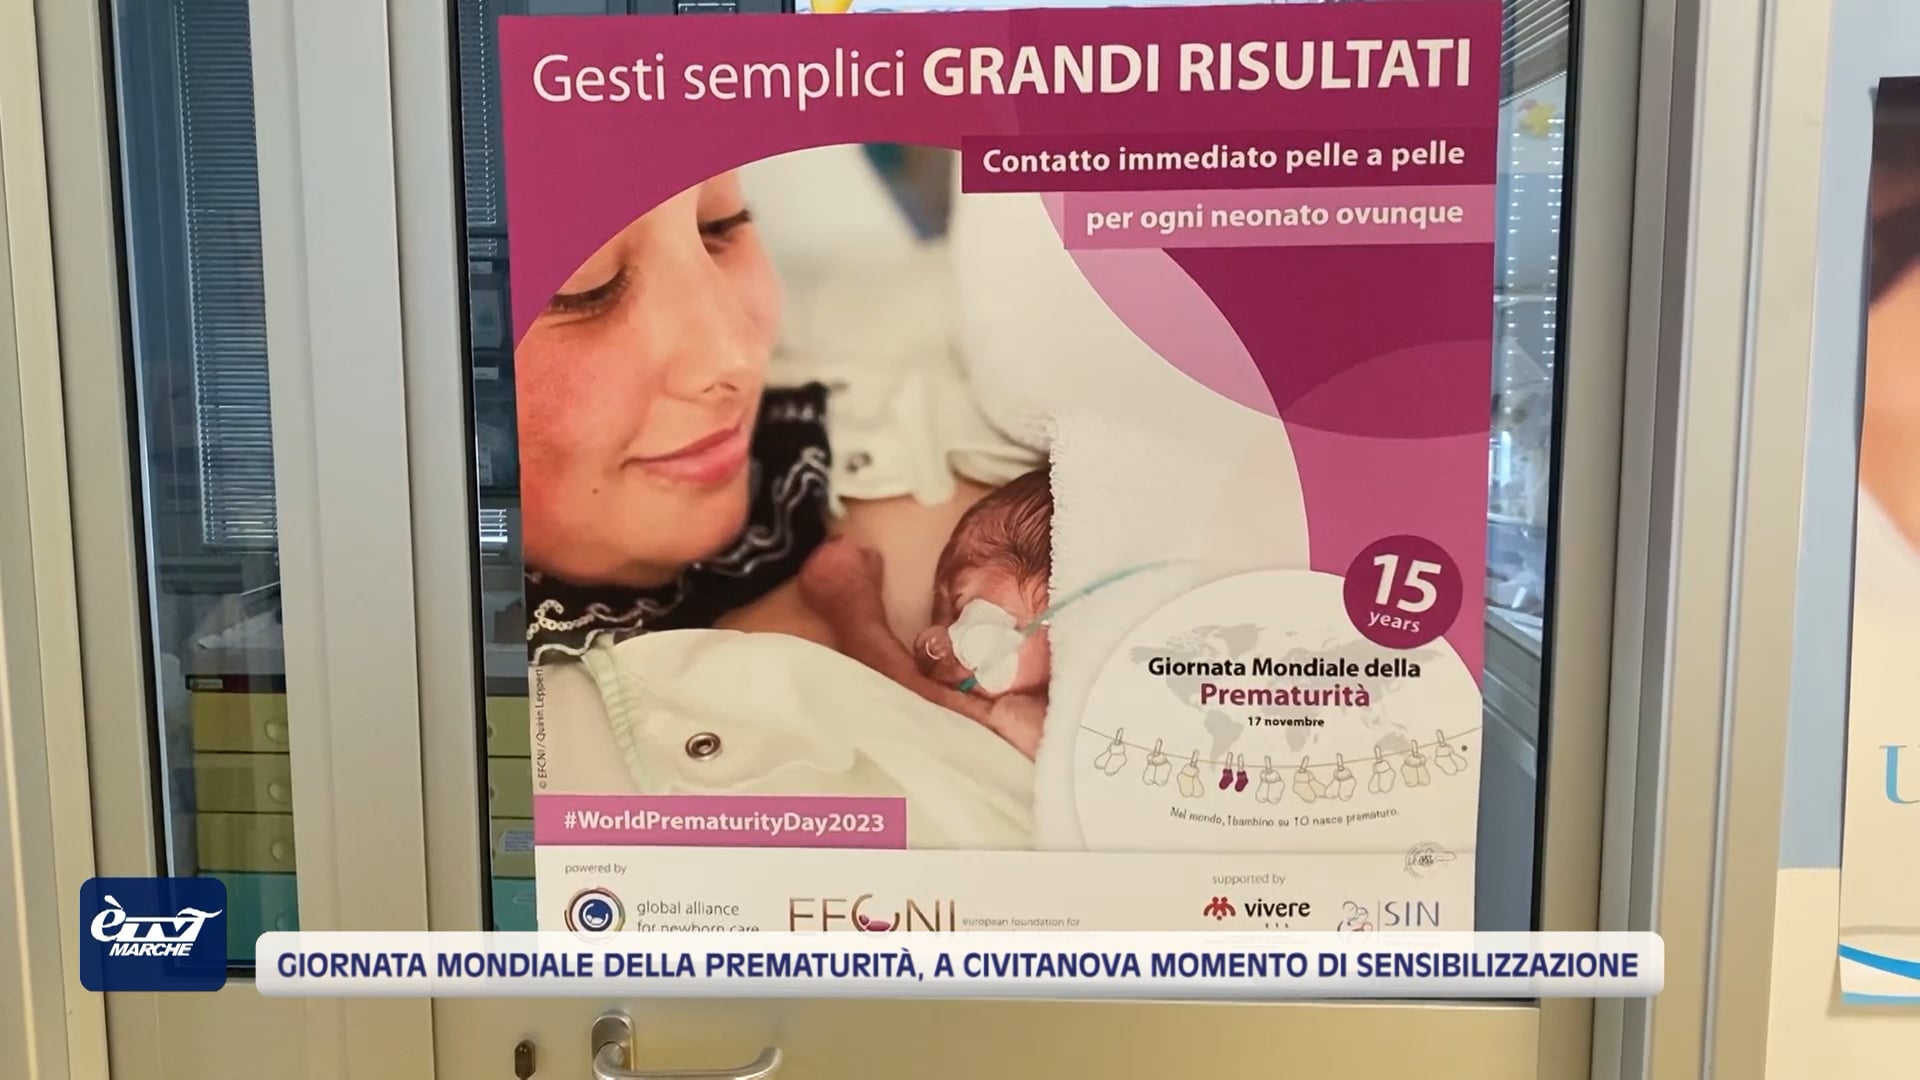 Giornata Mondiale della Prematurità, a Civitanova Marche momento di sensibilizzazione - VIDEO